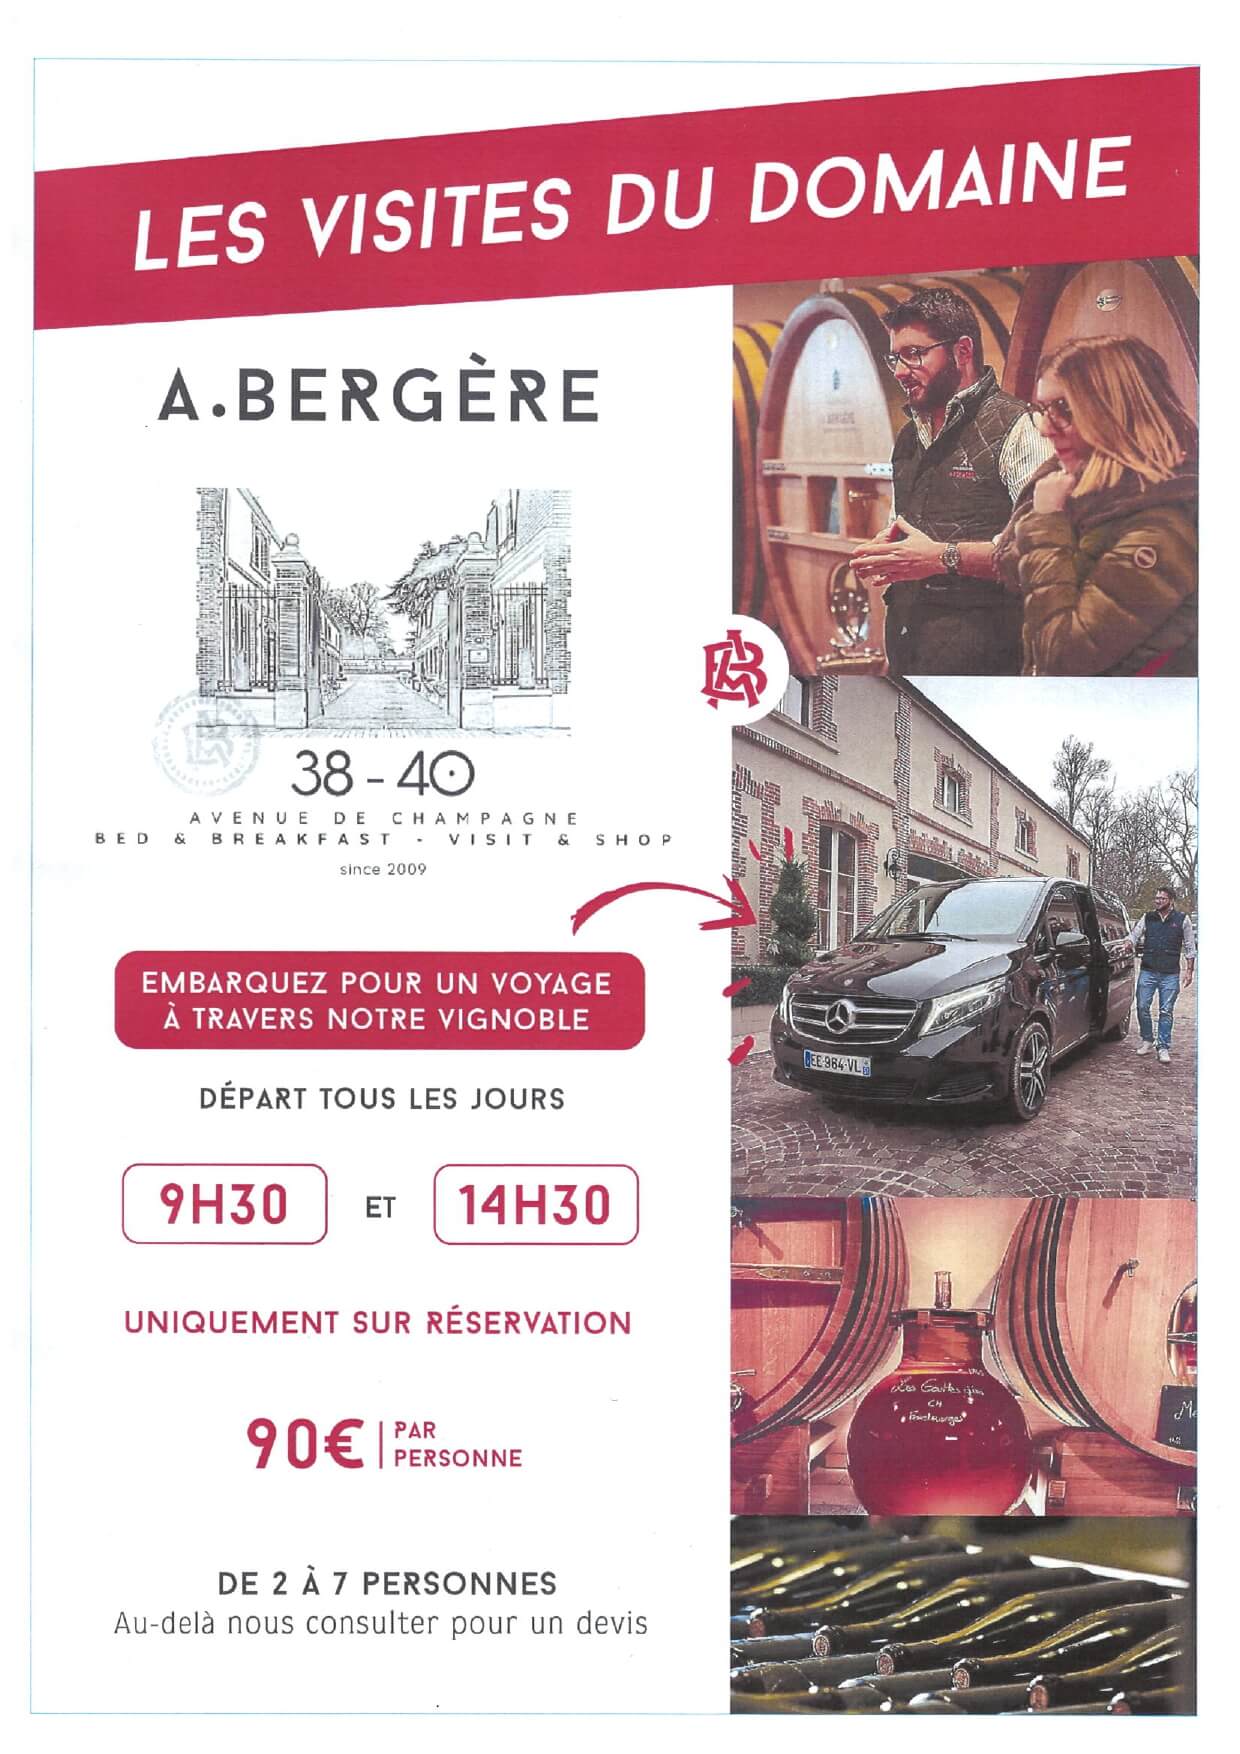 Visite Champagne André Bergère